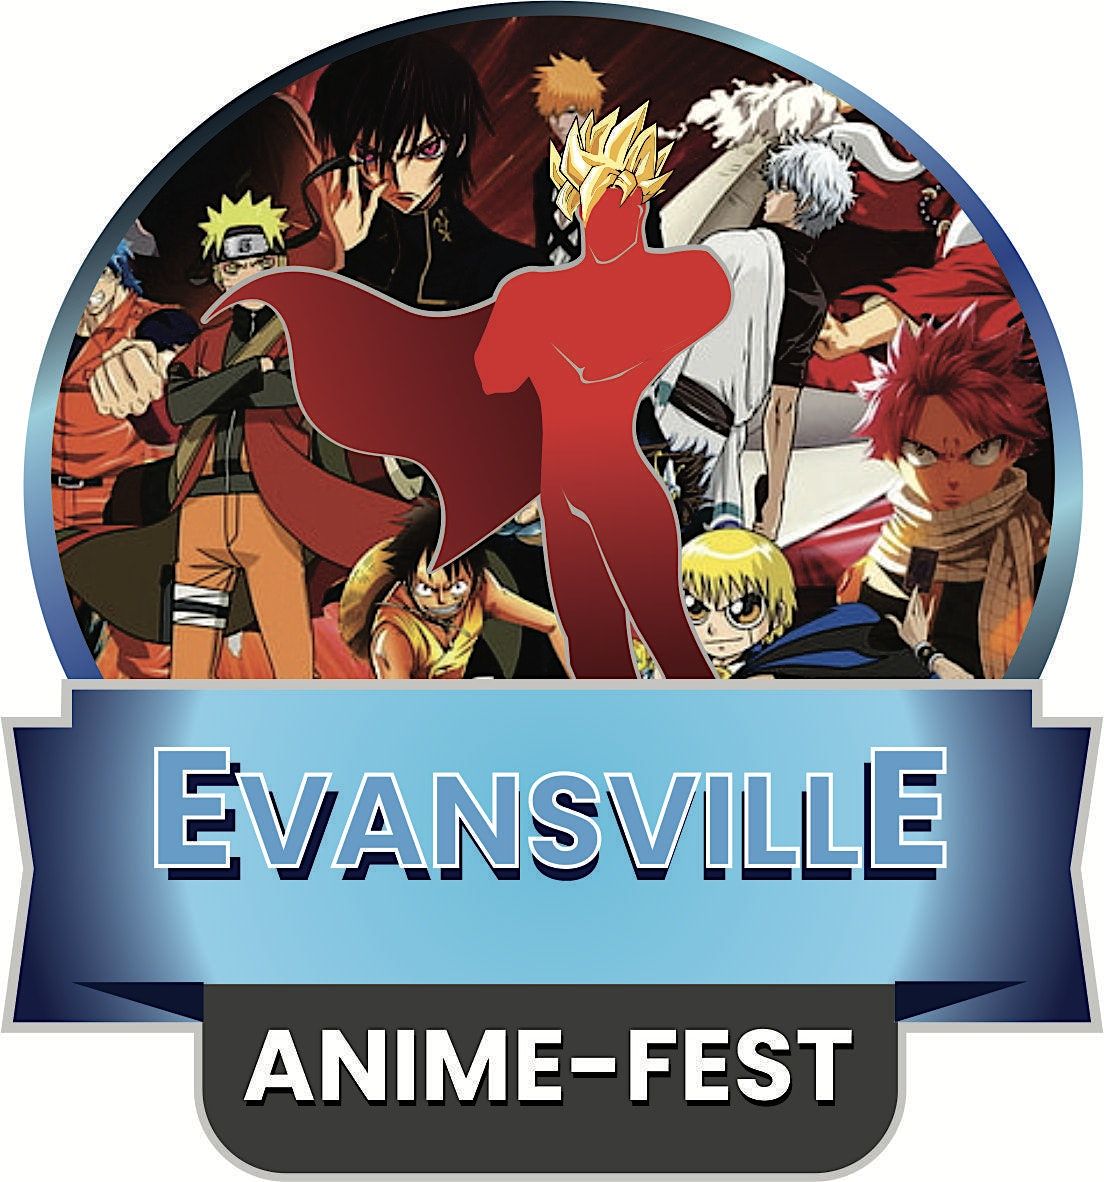 Evansville Anime-Fest